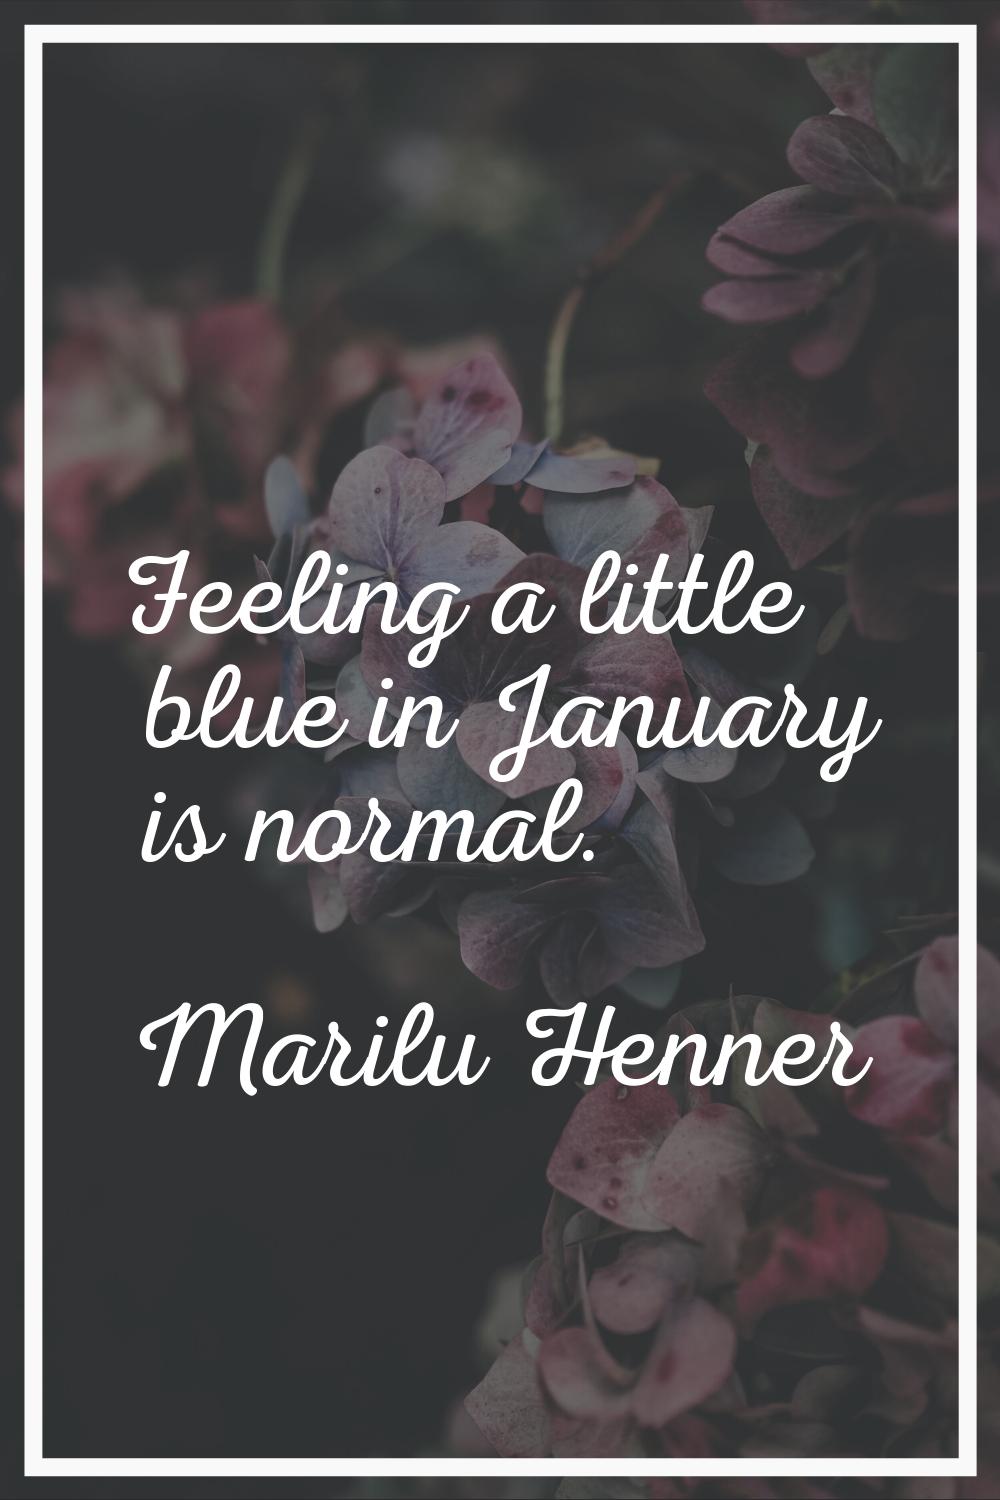 Feeling a little blue in January is normal.